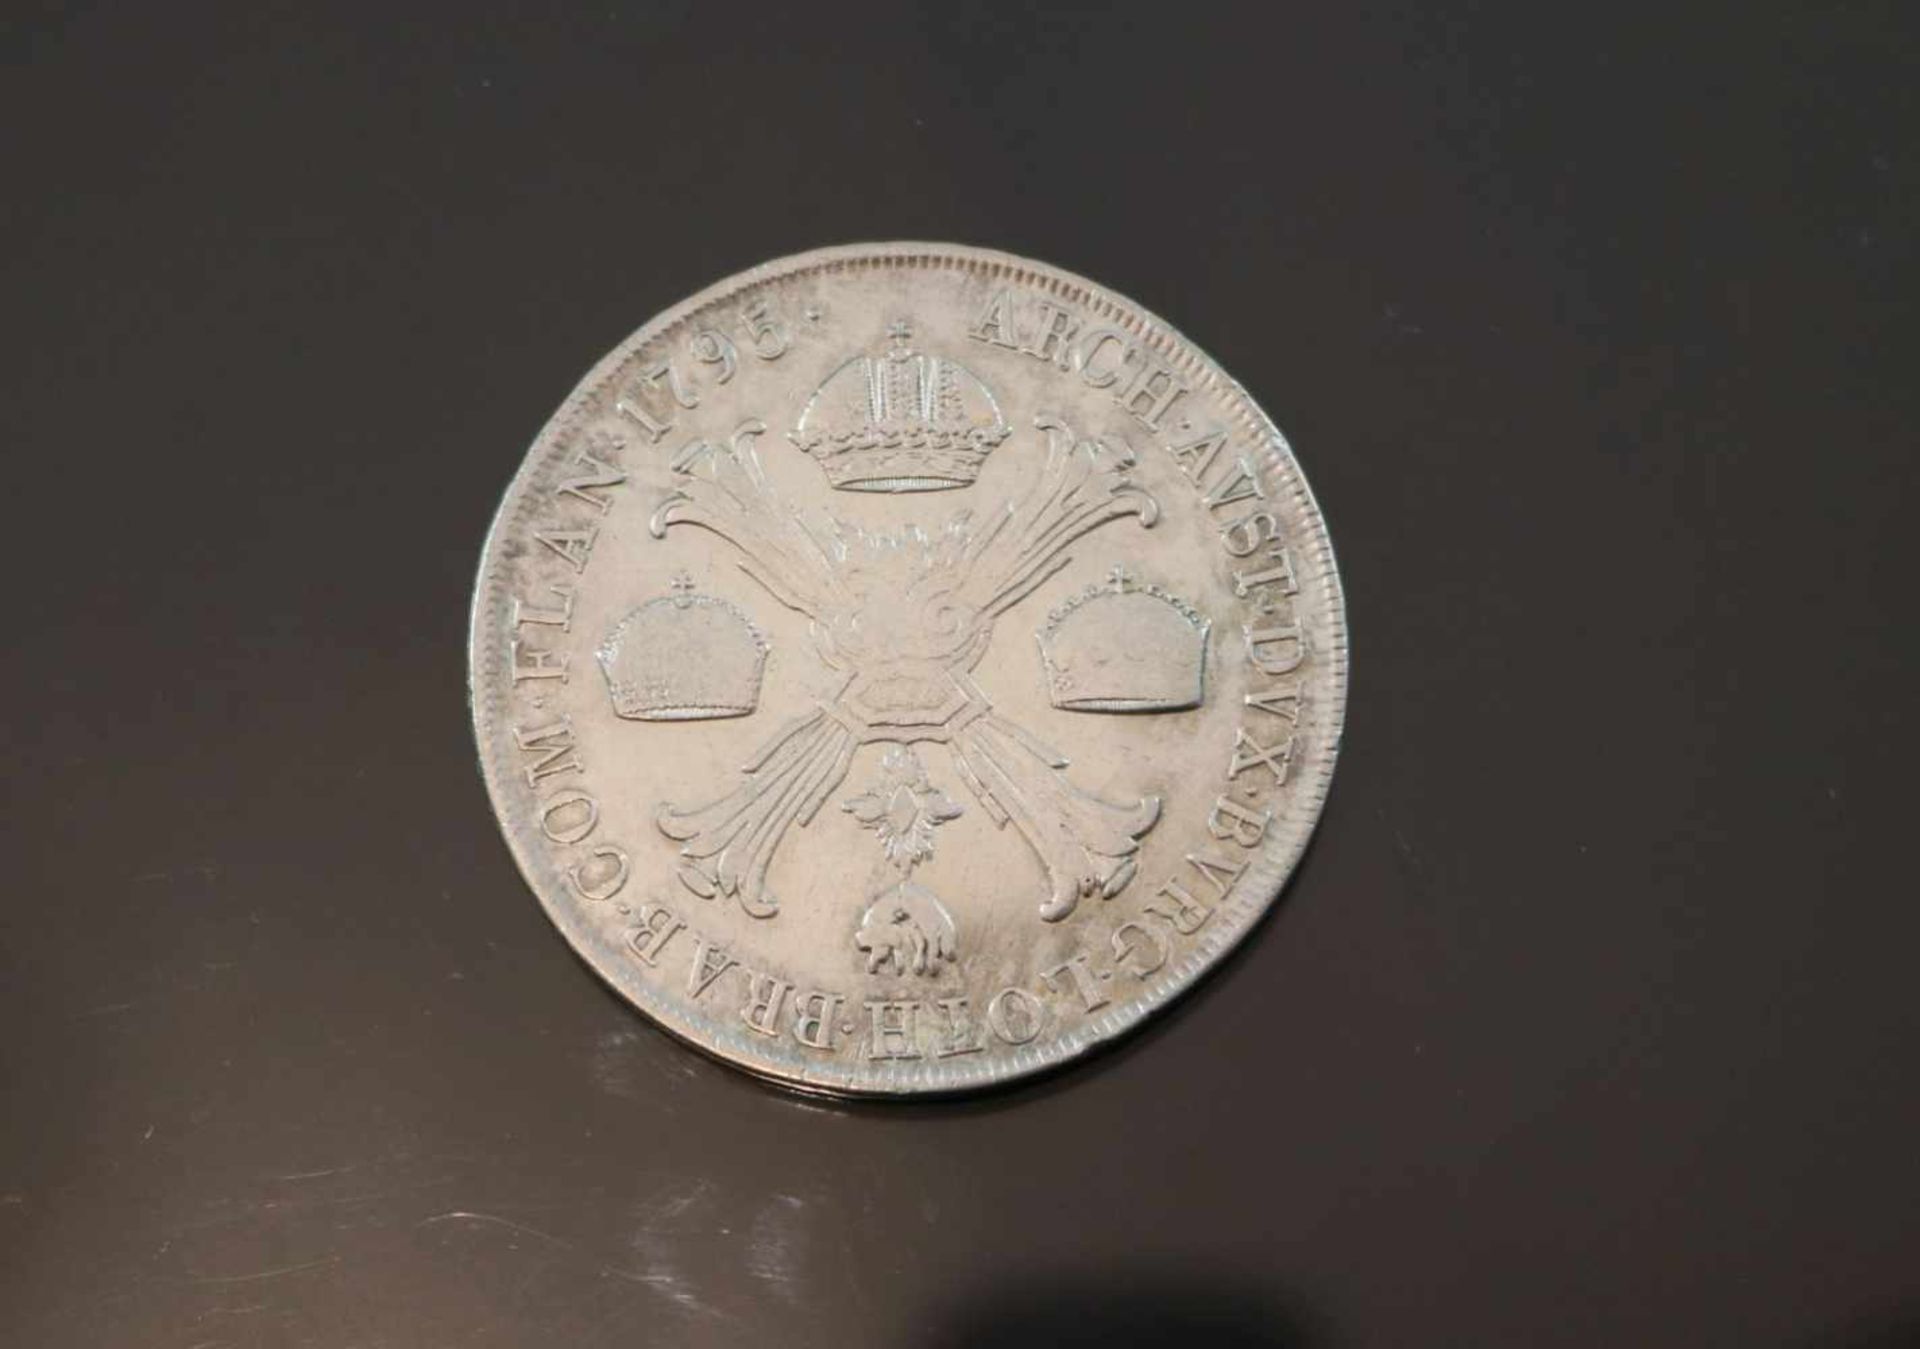 1 Kronentaler 1795 HabsburgMaterial: SilberPrägebuchstabe: MGewicht: 29,3 Gramm Größe: 41,1 mm